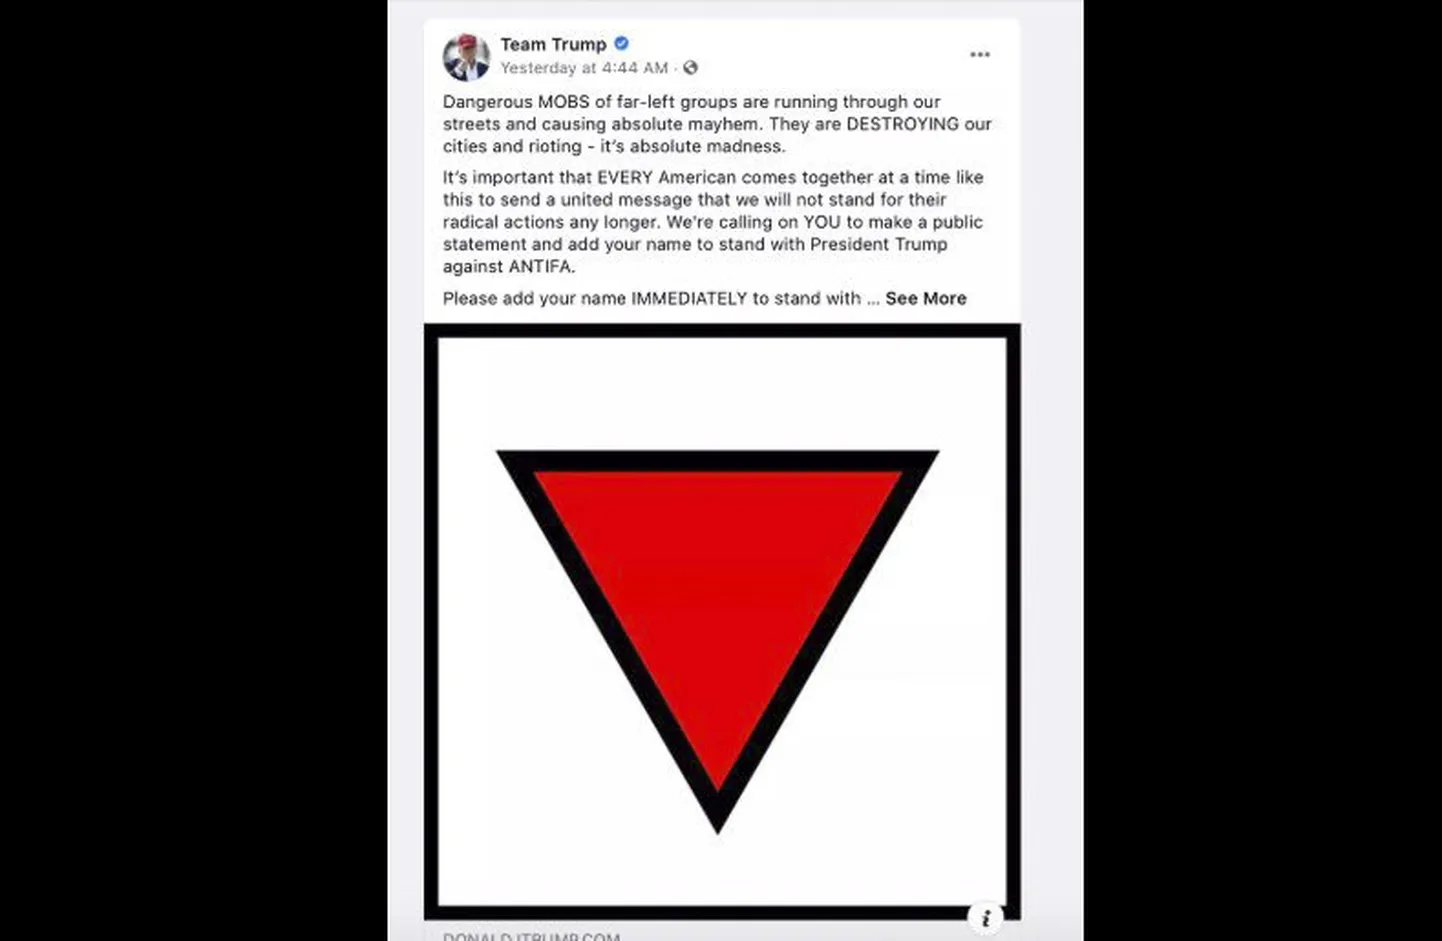 Ekrānšāviņš no Trampa pārvēlēšanas reklāmas, kuru "Facebook" bloķējis